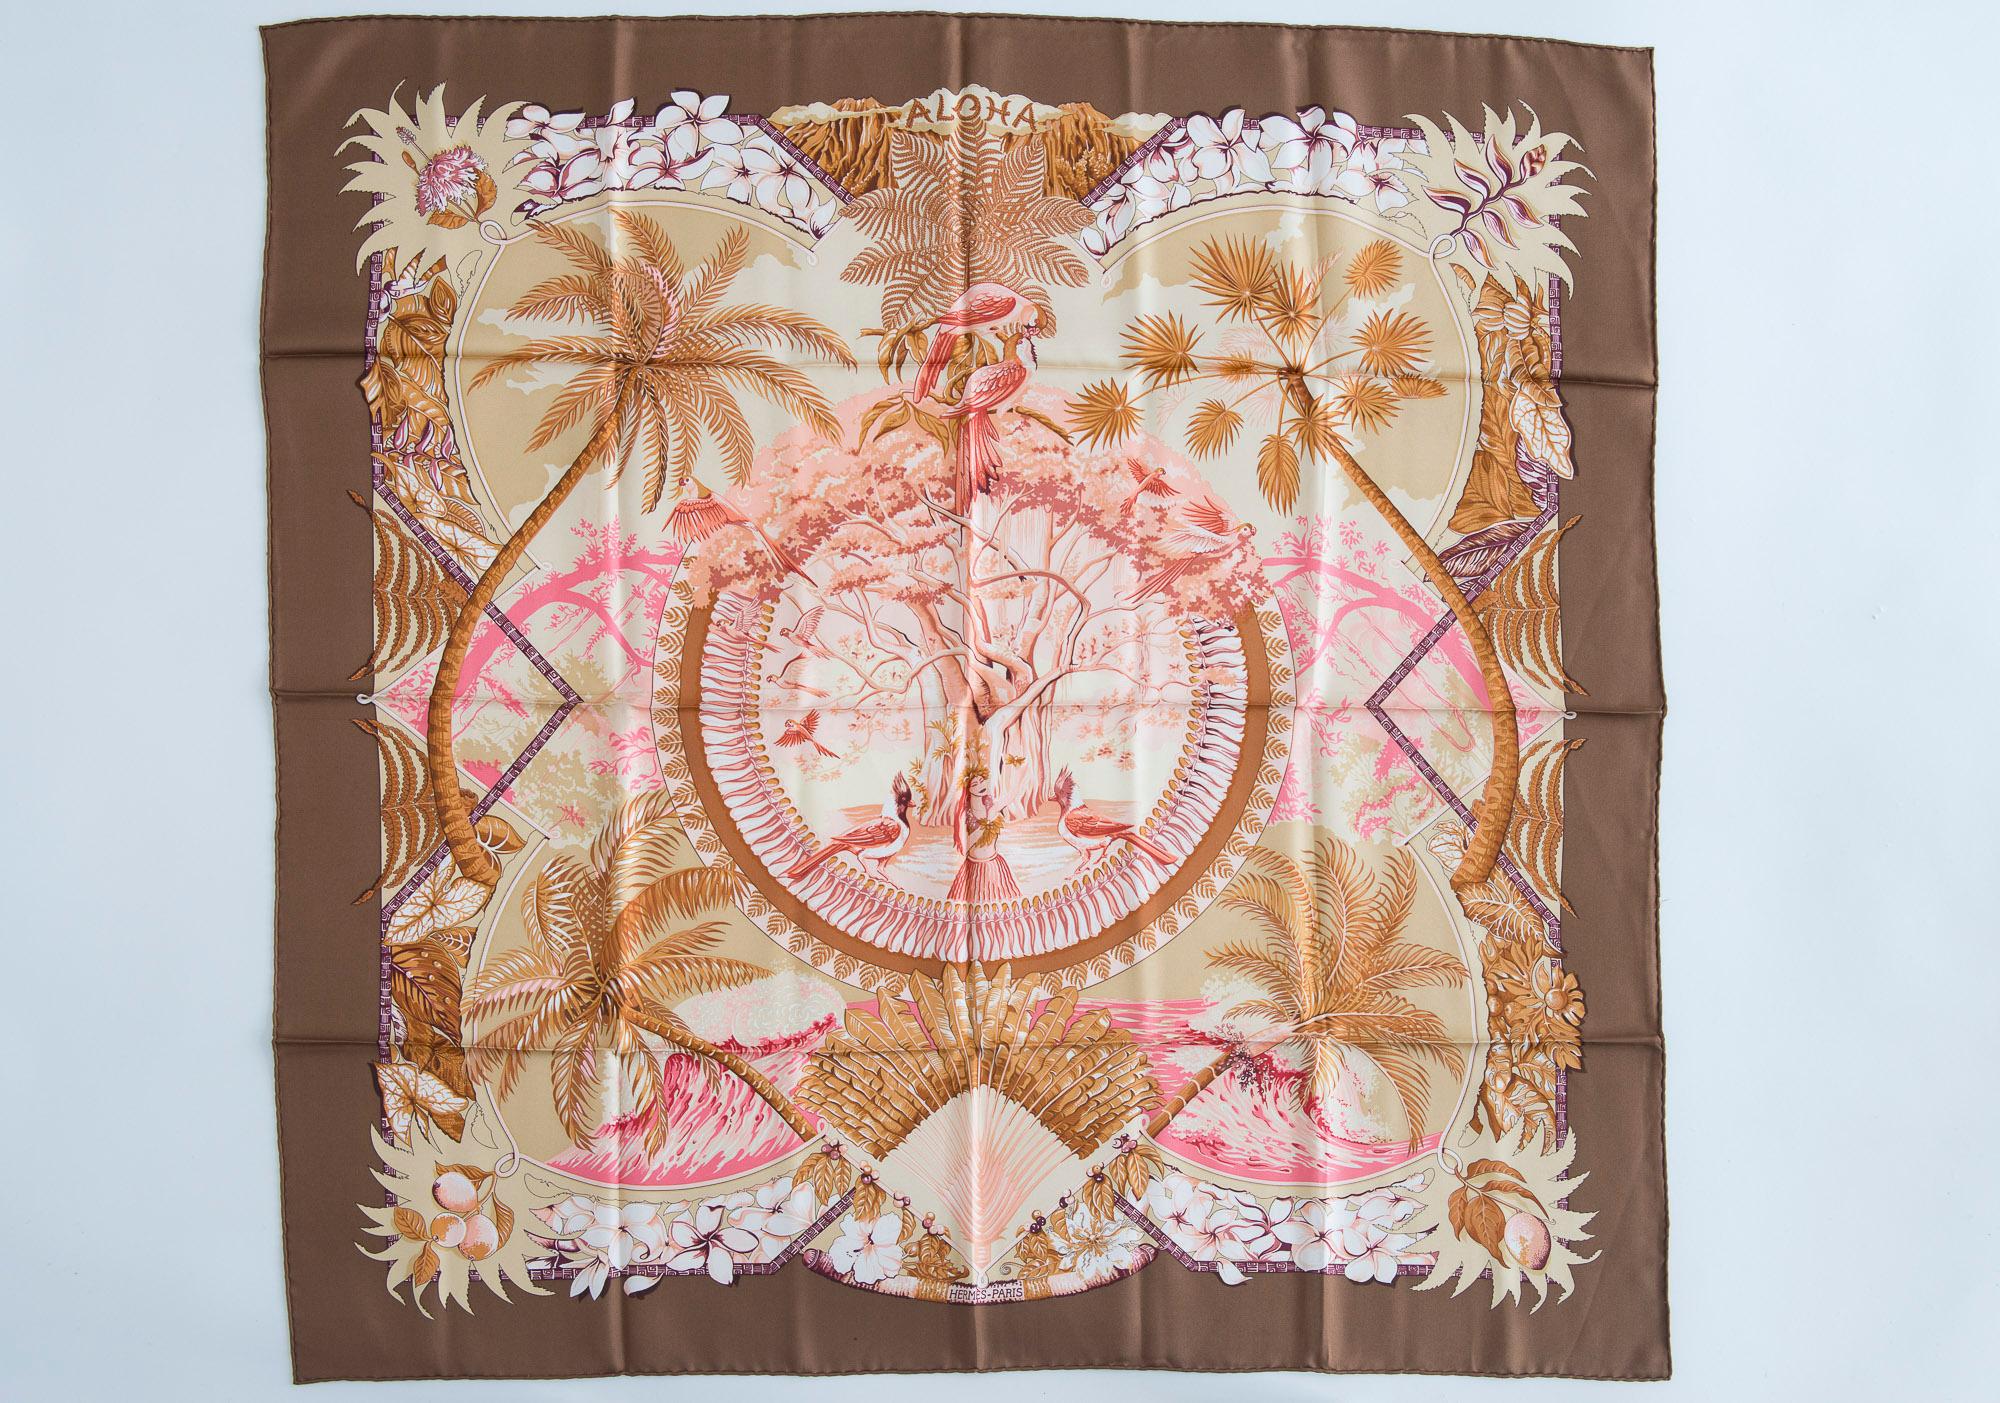 Authentischer Hermès Aloha 90 cm Seidenschal in einer seltenen Farbgebung. Der ursprünglich von Bourthomieux im Jahr 2000 entworfene Druck zeigt eine taupefarbene Umrandung mit schönen Rosatönen in der Mitte des Designs. Tropisches Thema mit Palmen,